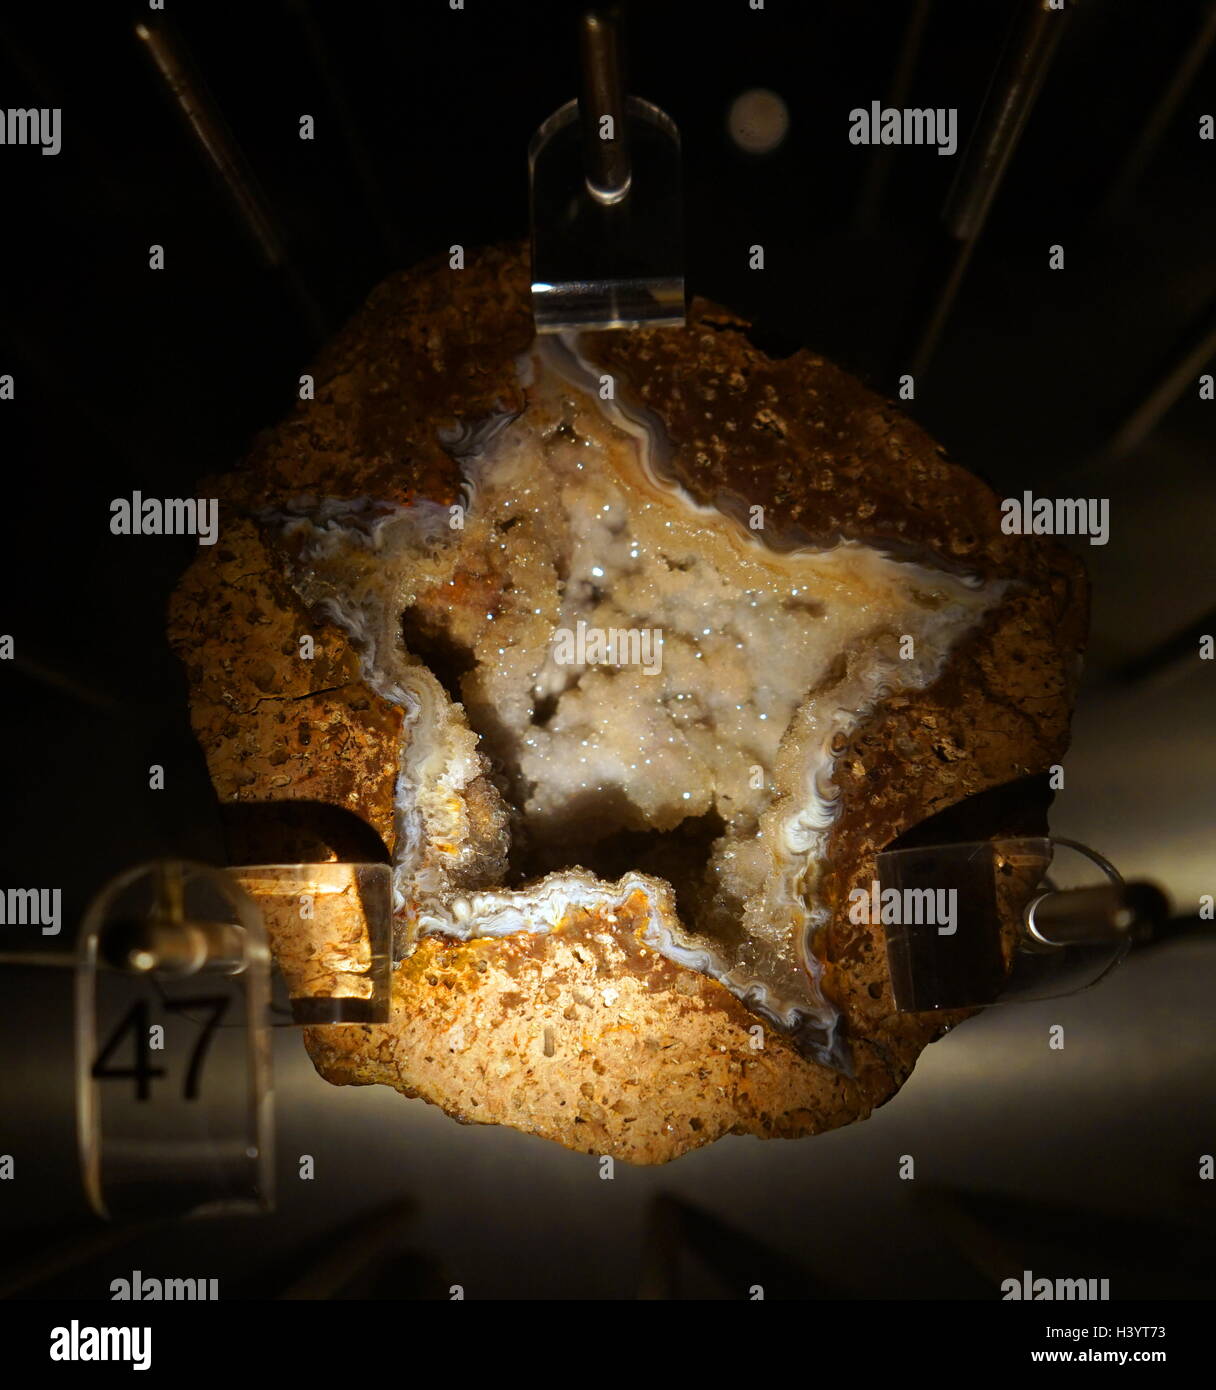 Un échantillon d'une étoile geode, avec une cavité en forme d'étoiles entourées d'une agate grise et bordée de petits cristaux de quartz. En date du 21e siècle Banque D'Images